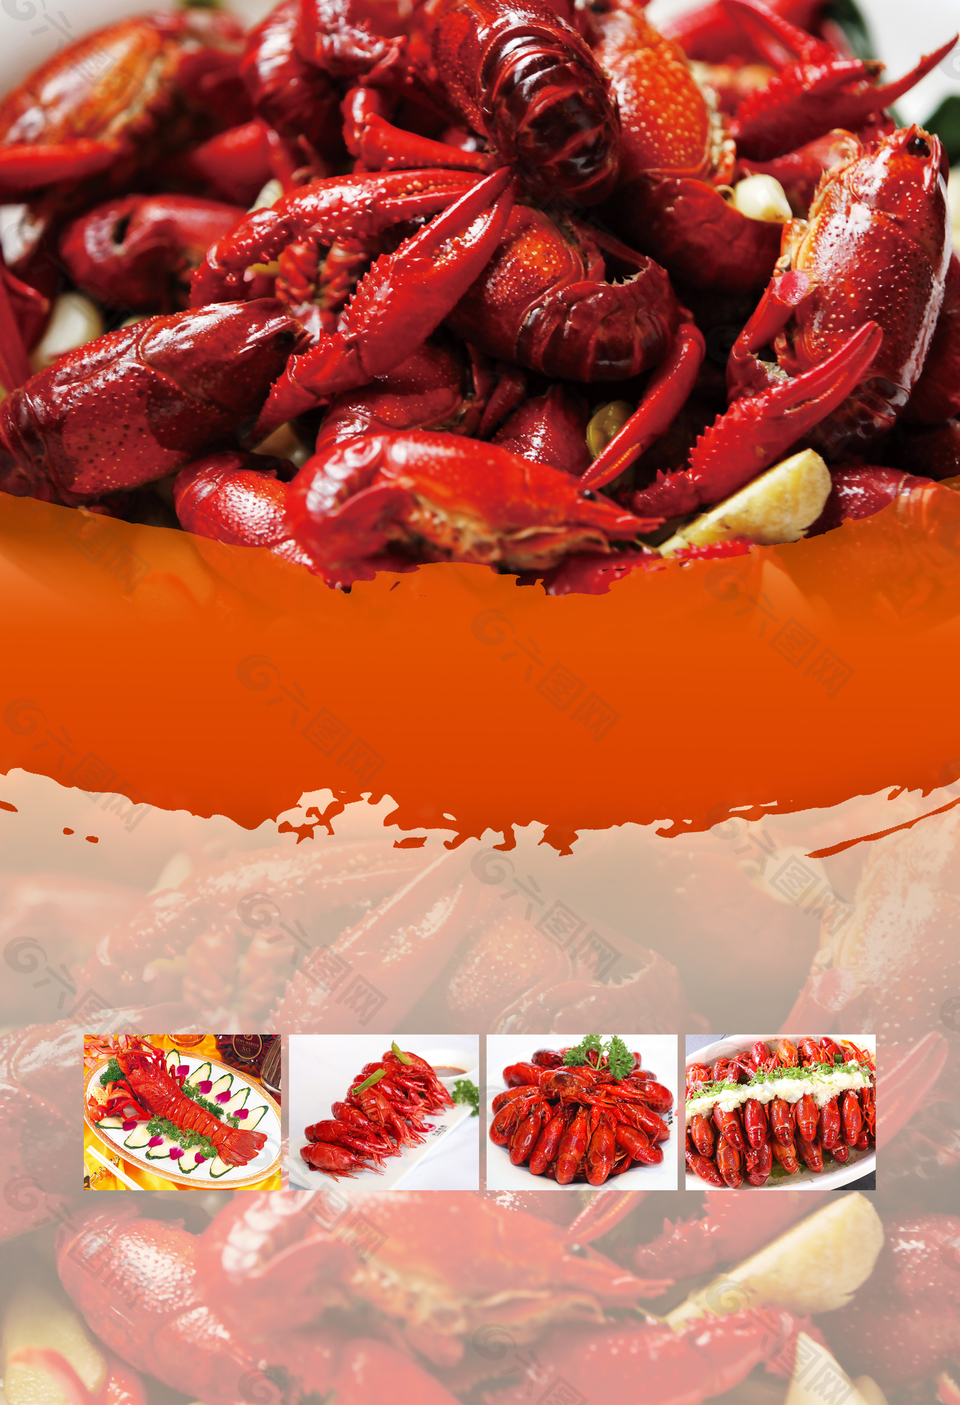 中国风麻辣小龙虾美食餐饮海报背景素材